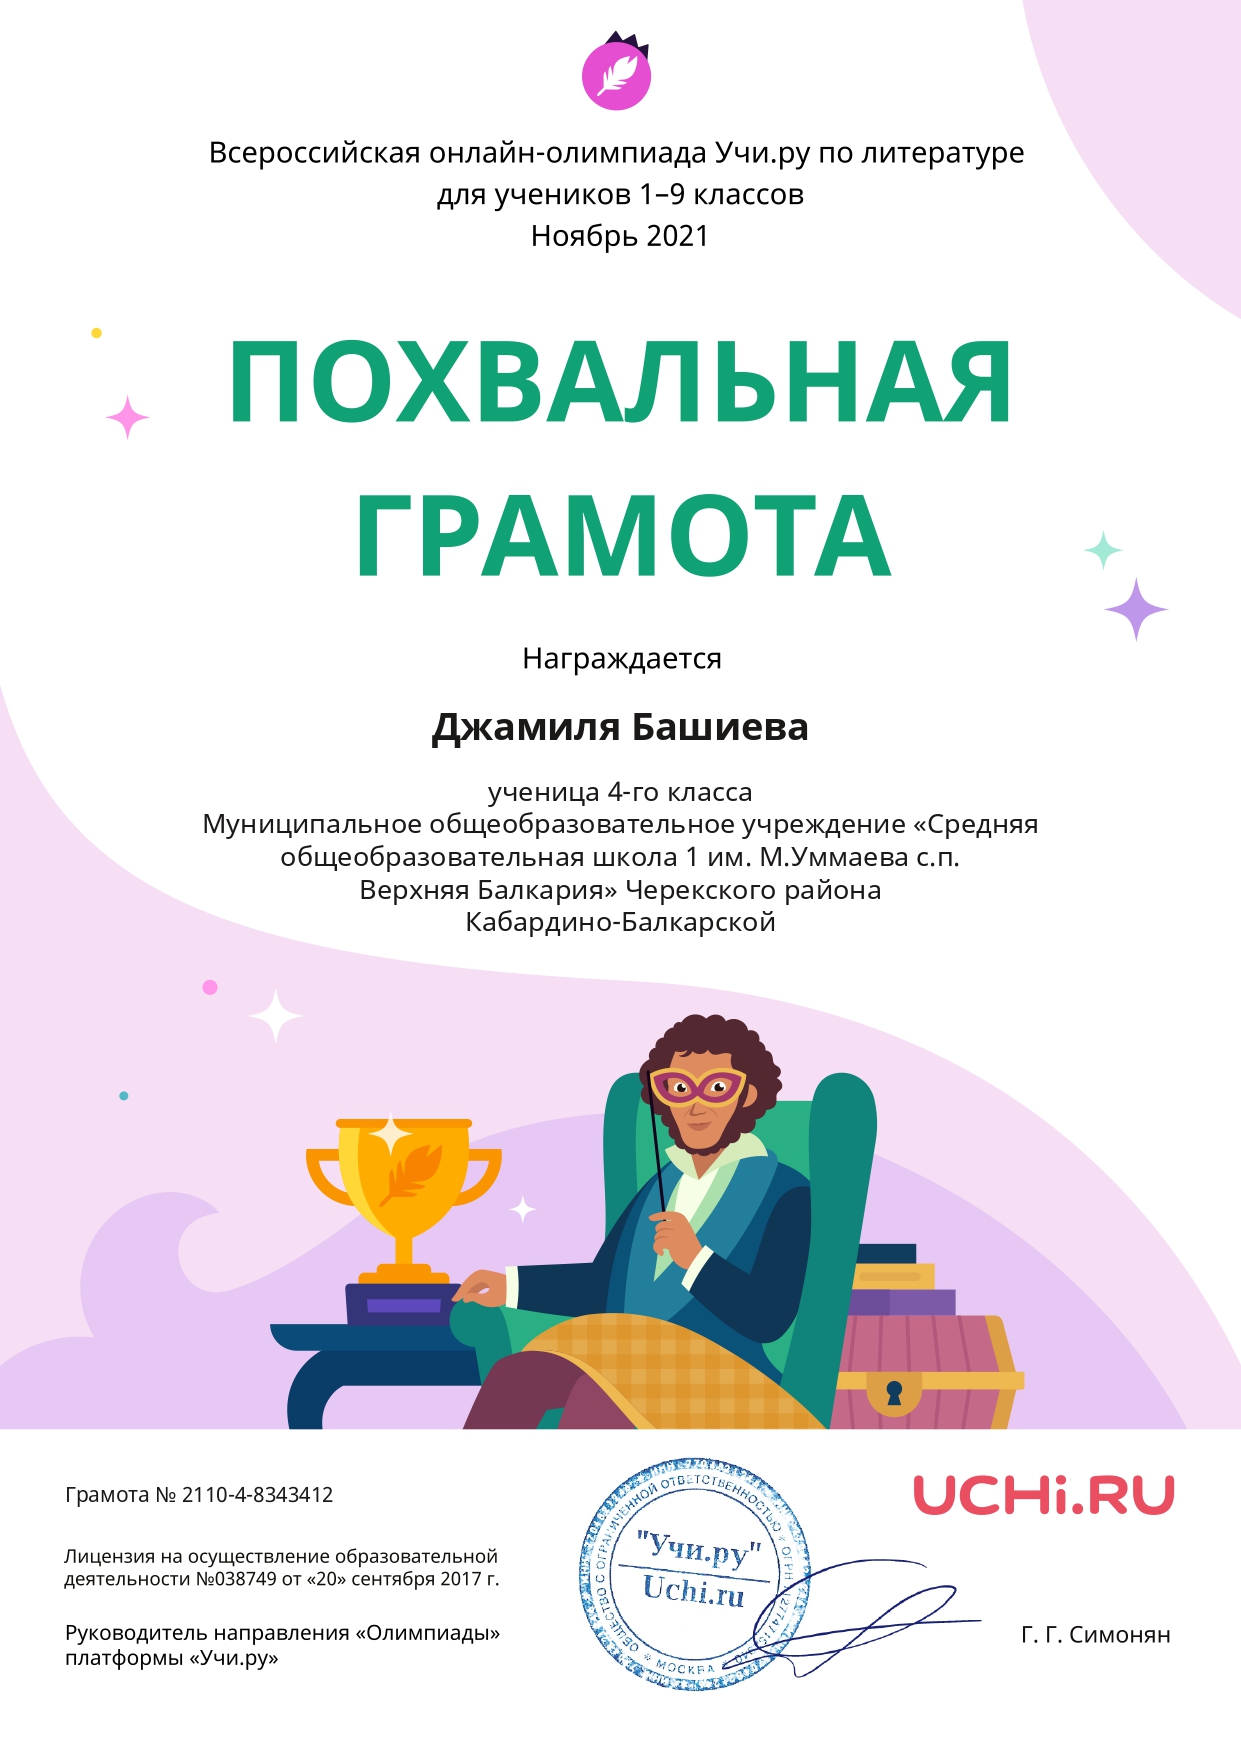 Charter Literatura Dzhamilya Bashieva page 0001